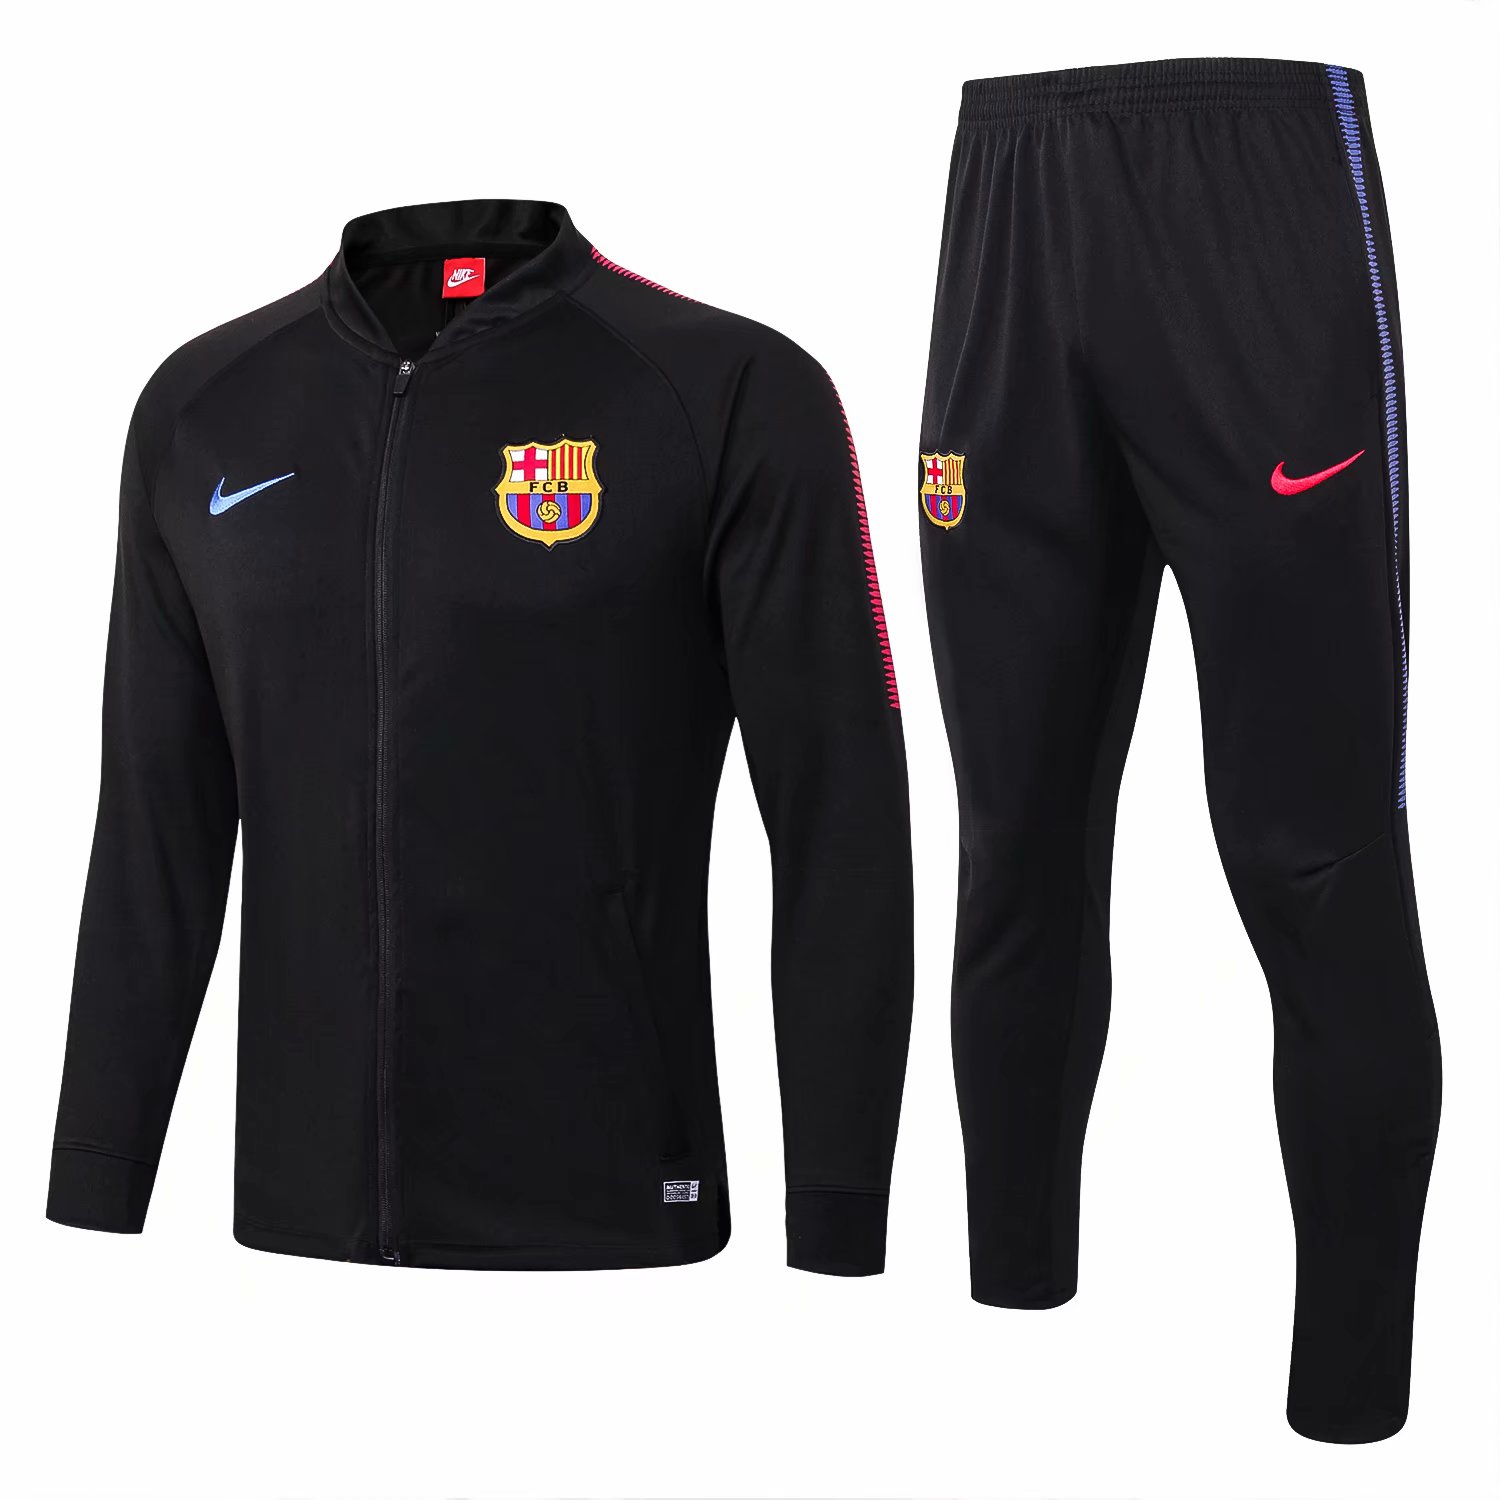 Barcelona 2017/18 Black Training Suit (Low Neck Jacket+Trouser)